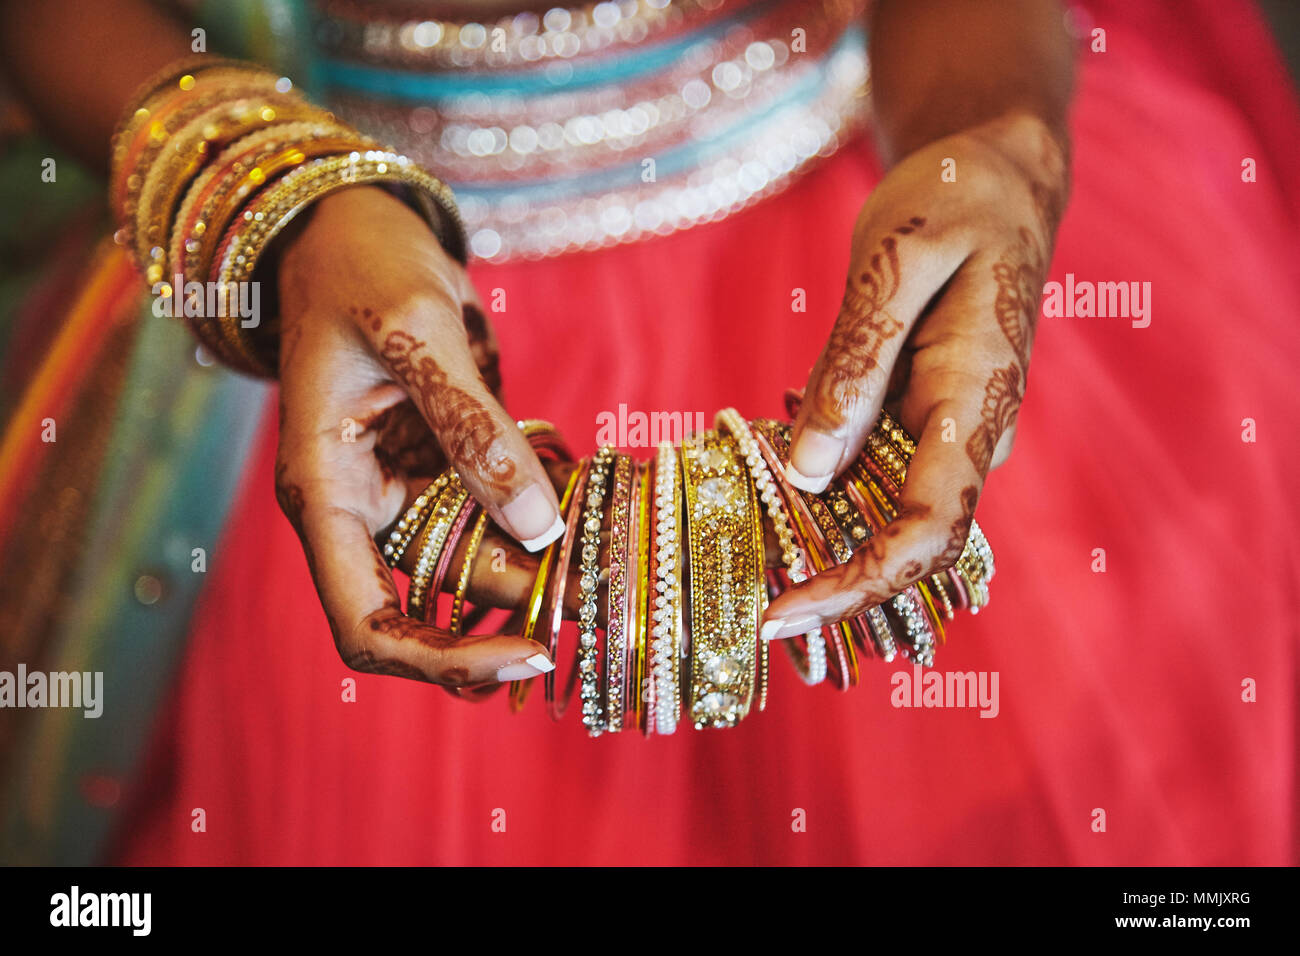 Le tatouage sur la main de l'épouse indienne ou mehndi (henné) avec bracelets et la tenue d'un grand nombre de bracelets (bangle) à mettre sur un autre côté, close-up Banque D'Images